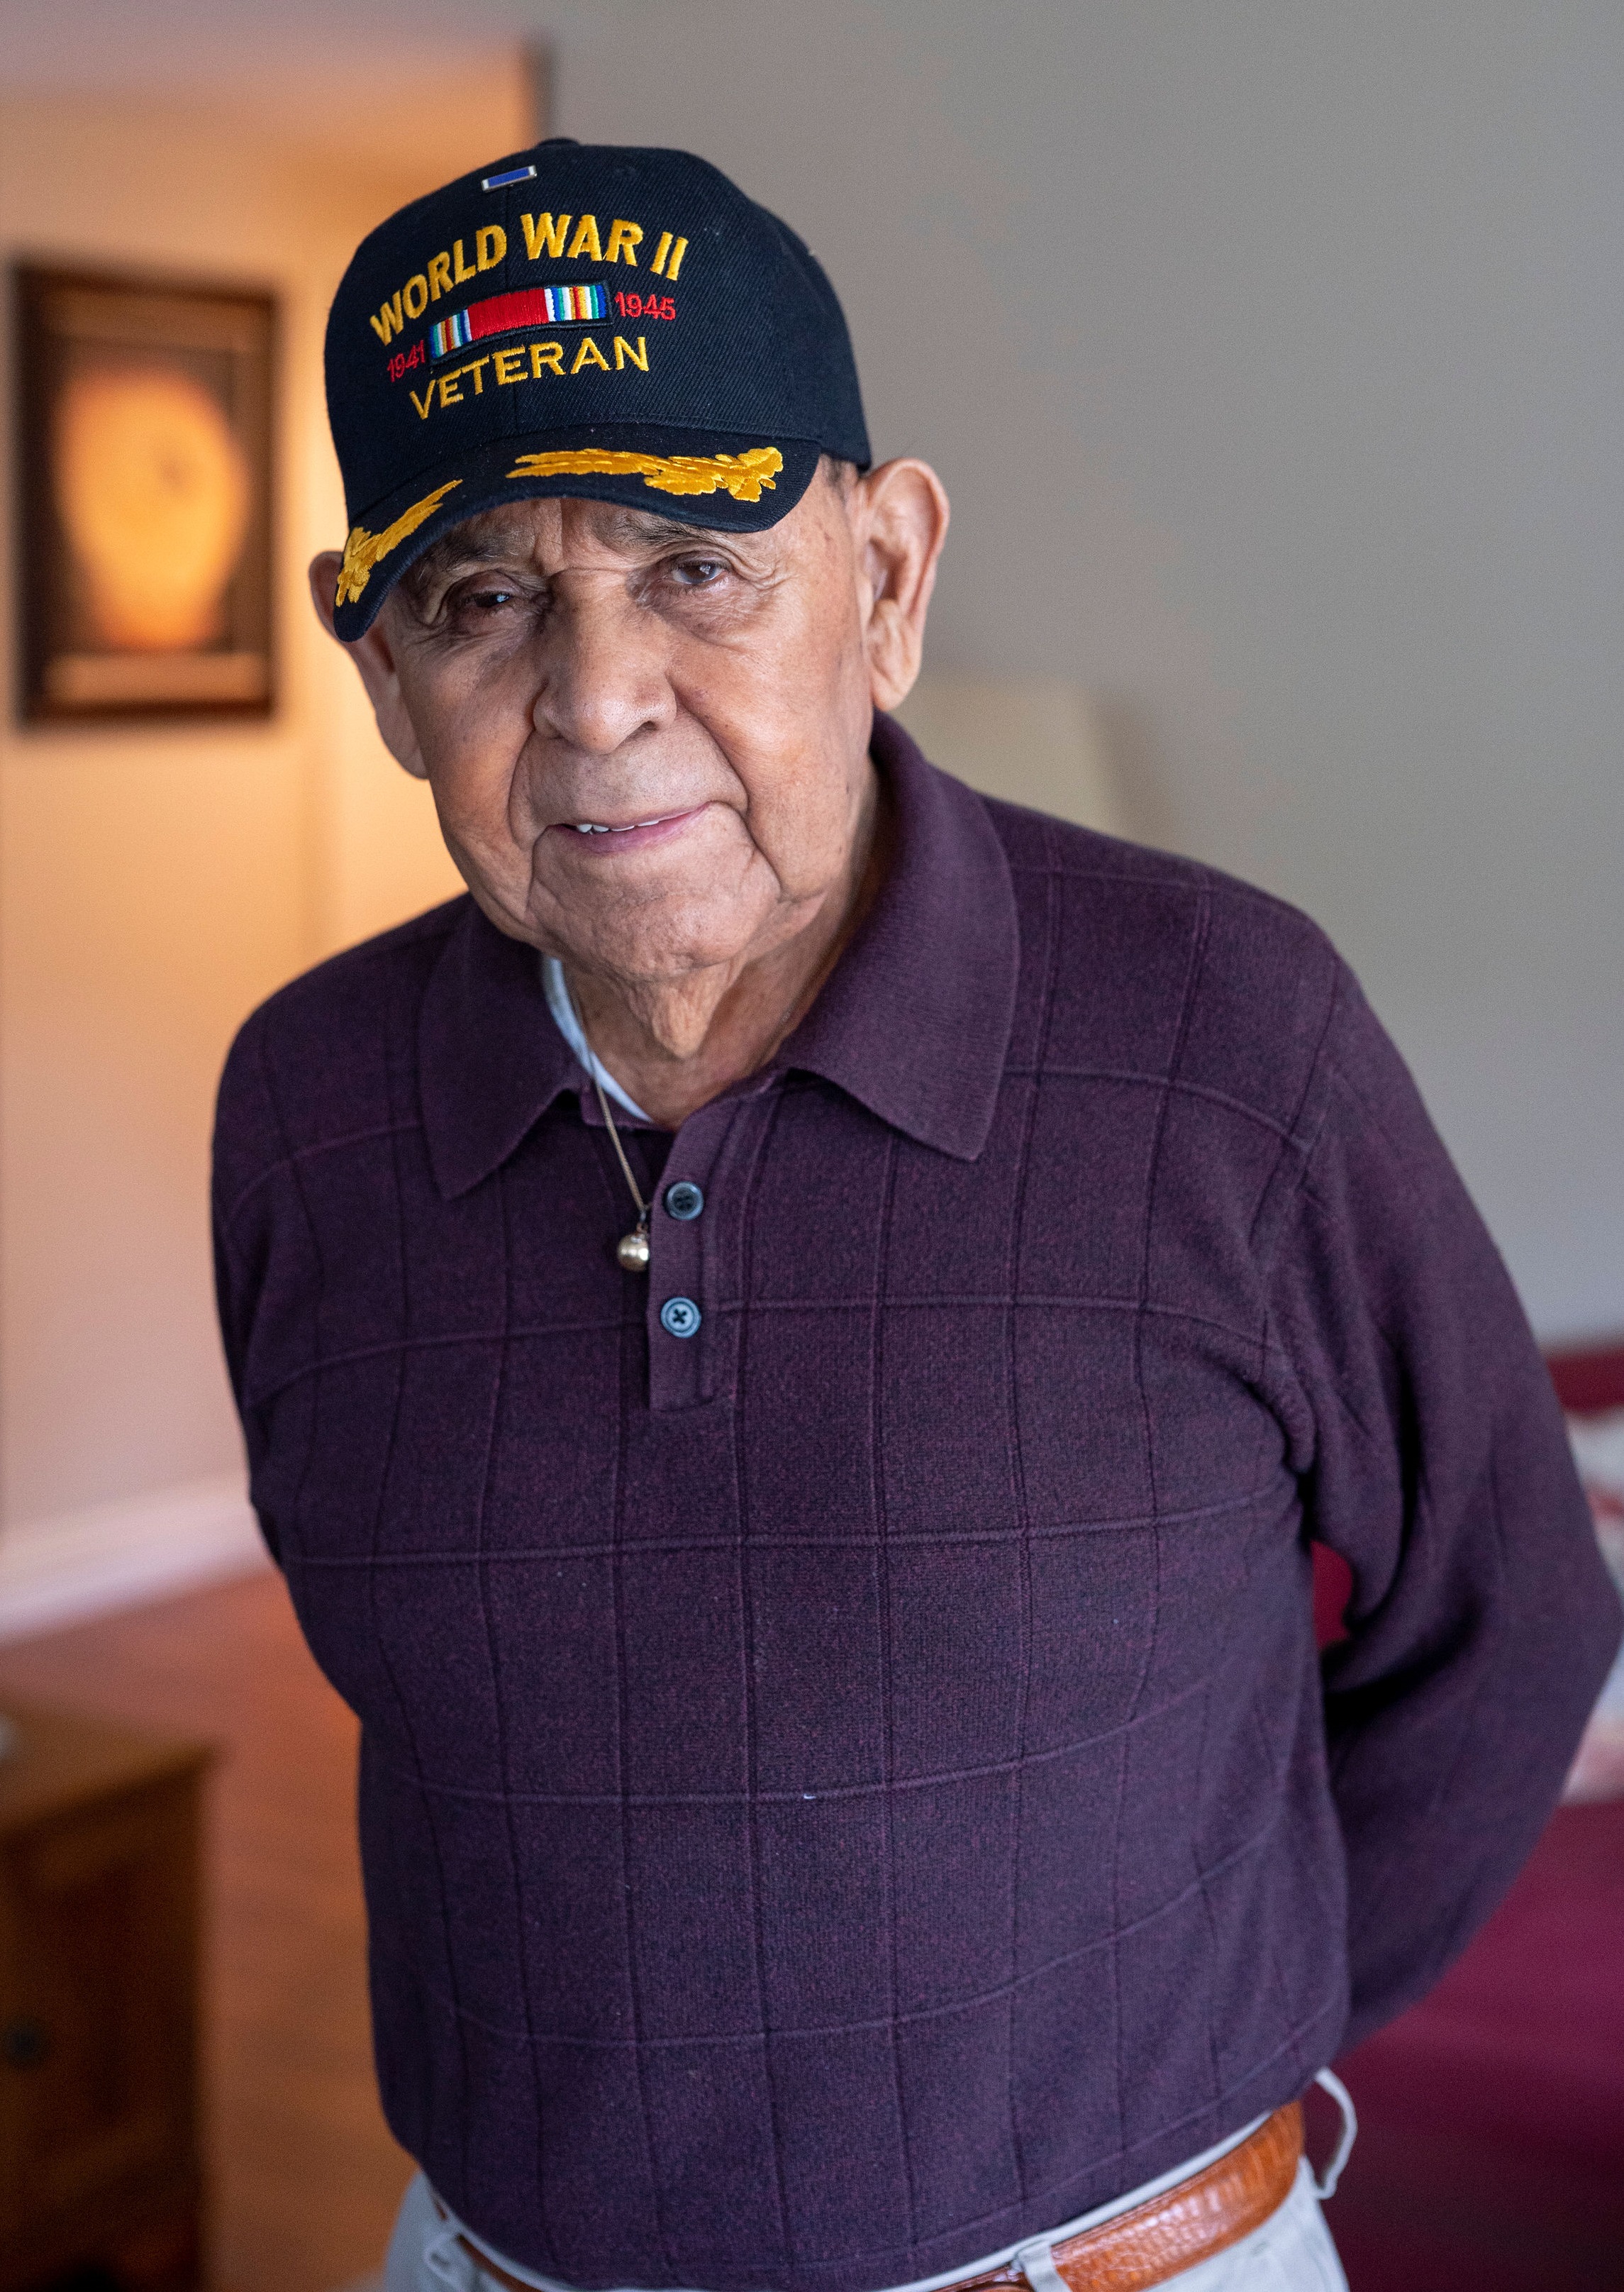 A World War II veteran wearing a purple shirt and a hat.